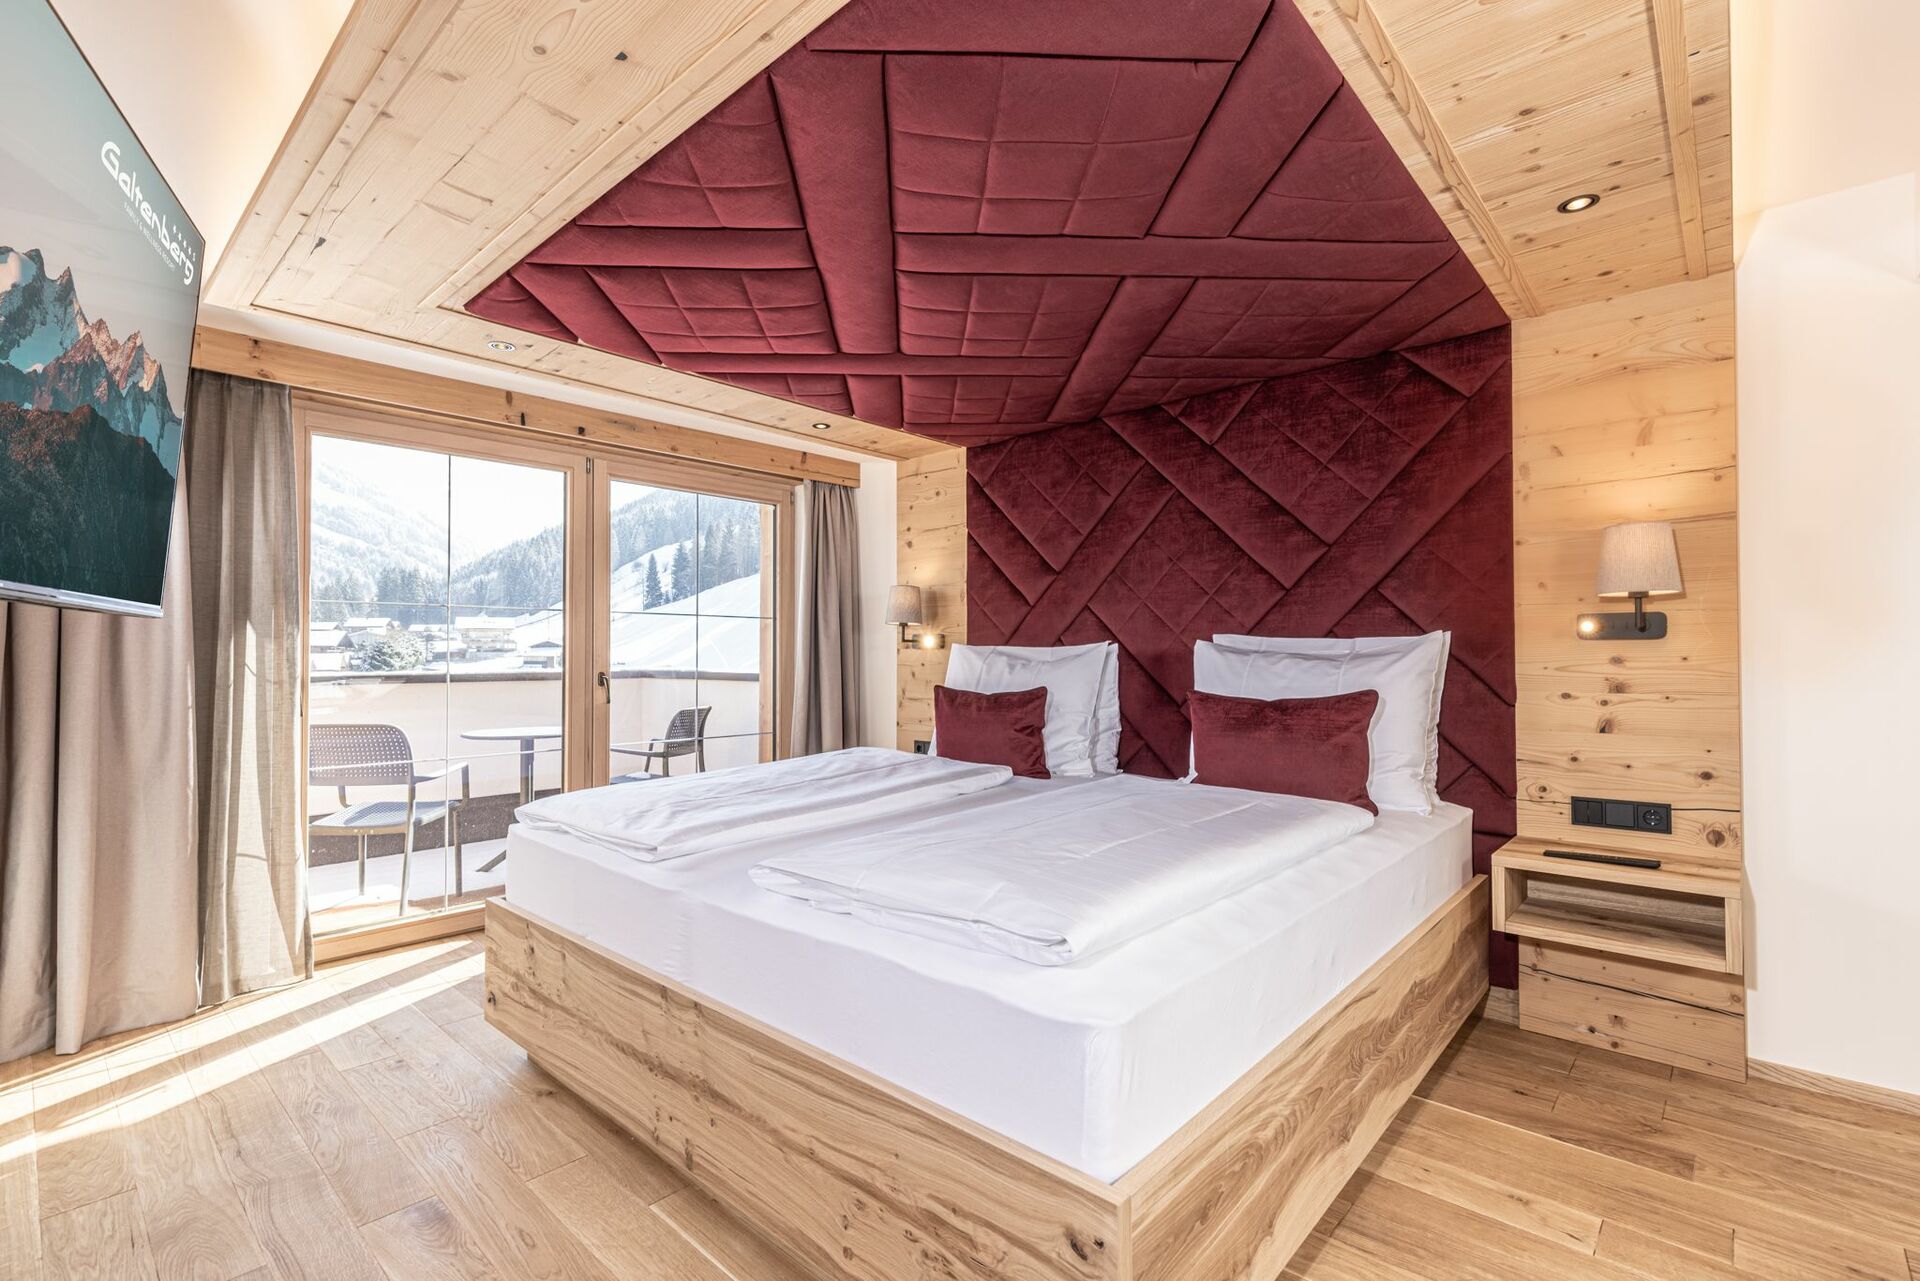 Ein romantisches Holzzimmer mit Blick auf die Berge für einen Romantik-Urlaub.